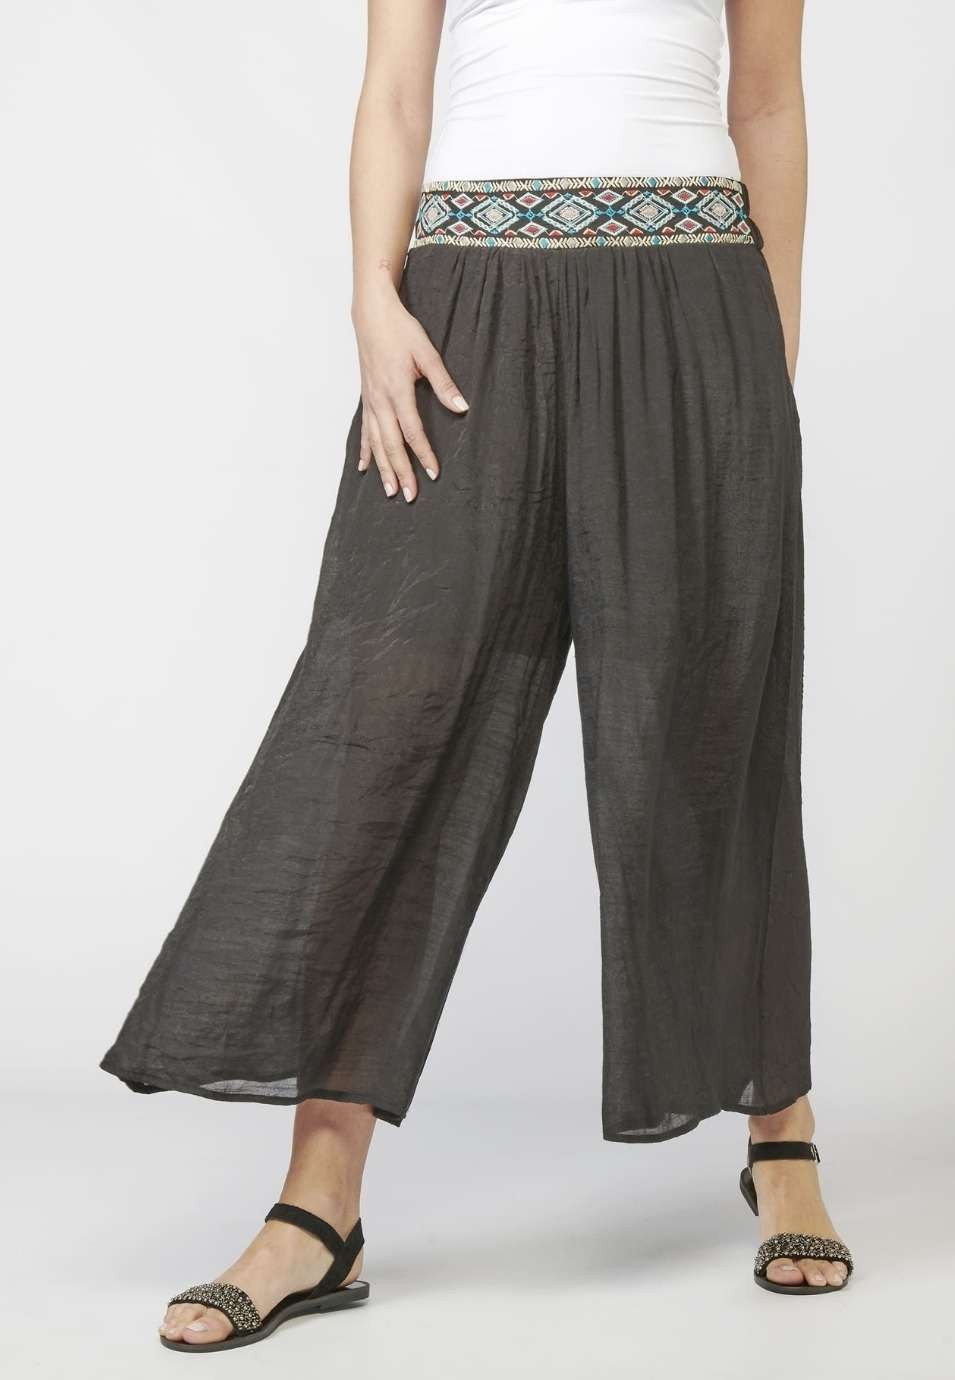 Pantalon long élastique pour femme avec ceinture et détail brodé ethnique de couleur noire